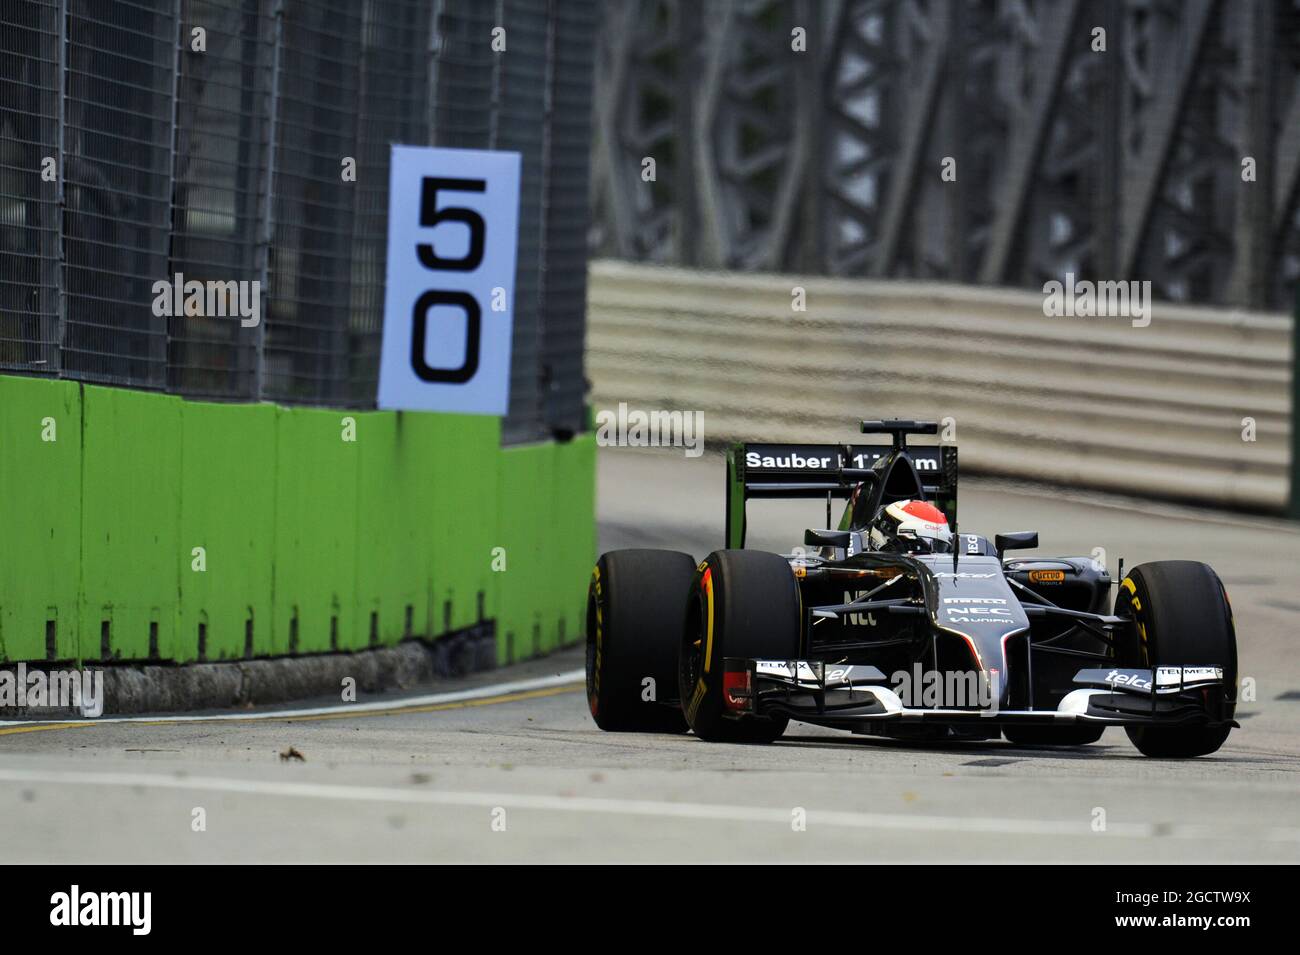 Adrian Sutil (GER) Sauber C33. Gran Premio di Singapore, sabato 20 settembre 2014. Circuito Marina Bay Street, Singapore. Foto Stock